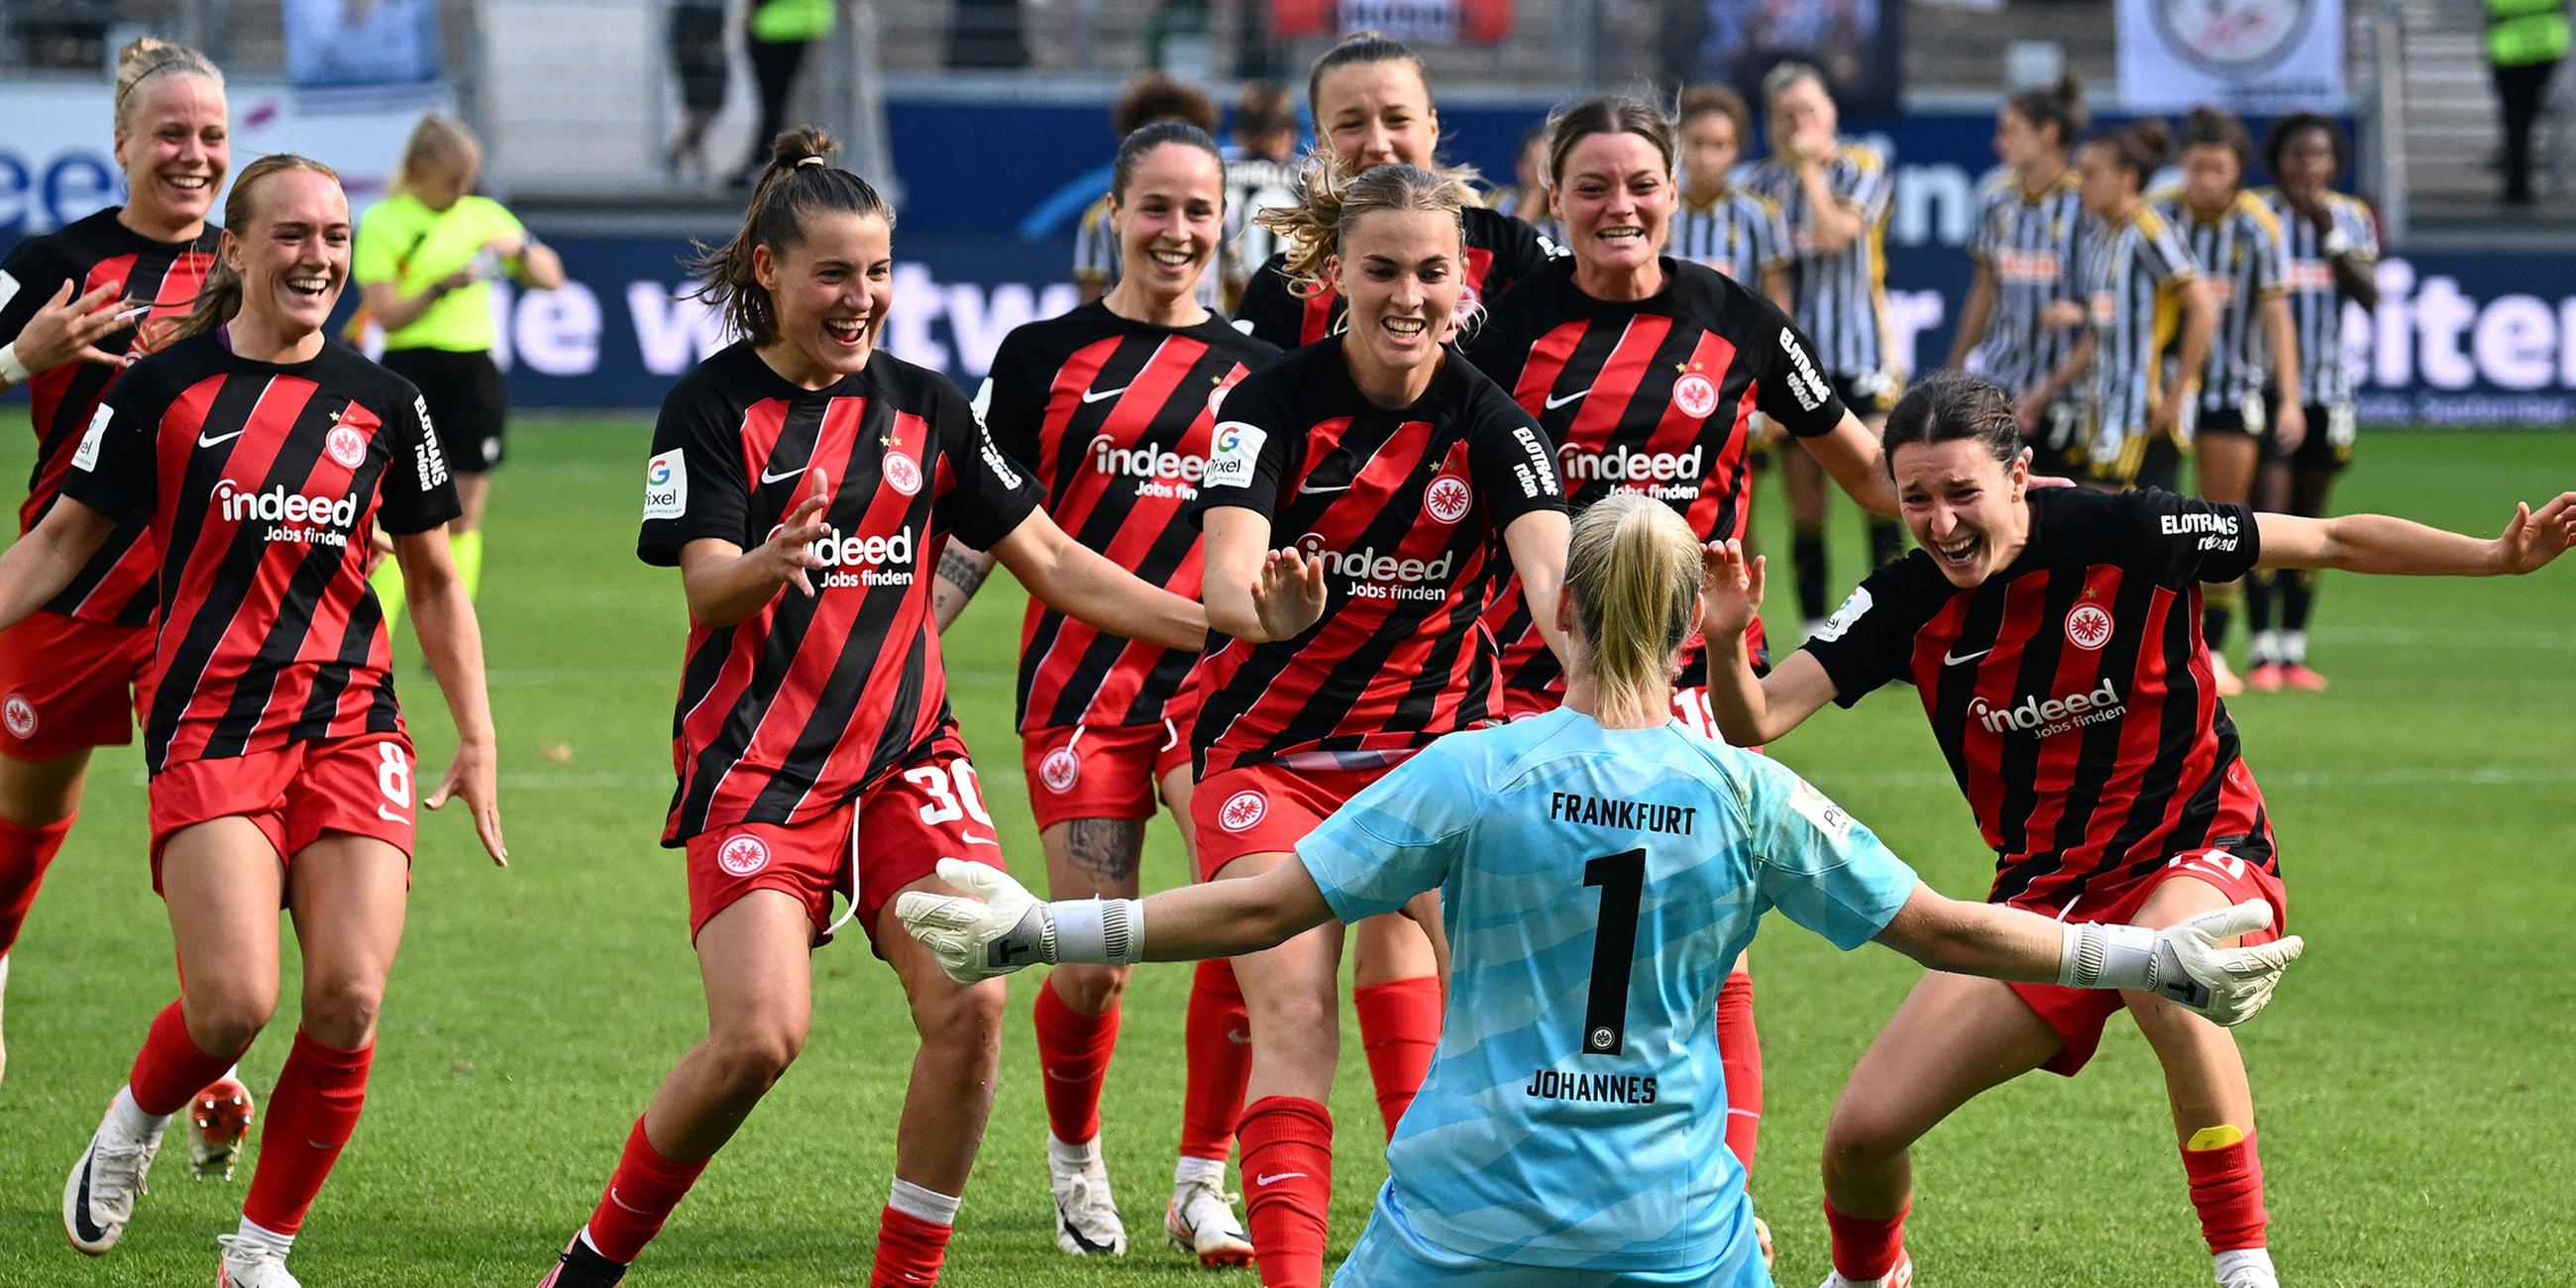 Spielerinnen von Eintracht Frankfurt jubeln nach Spielende.